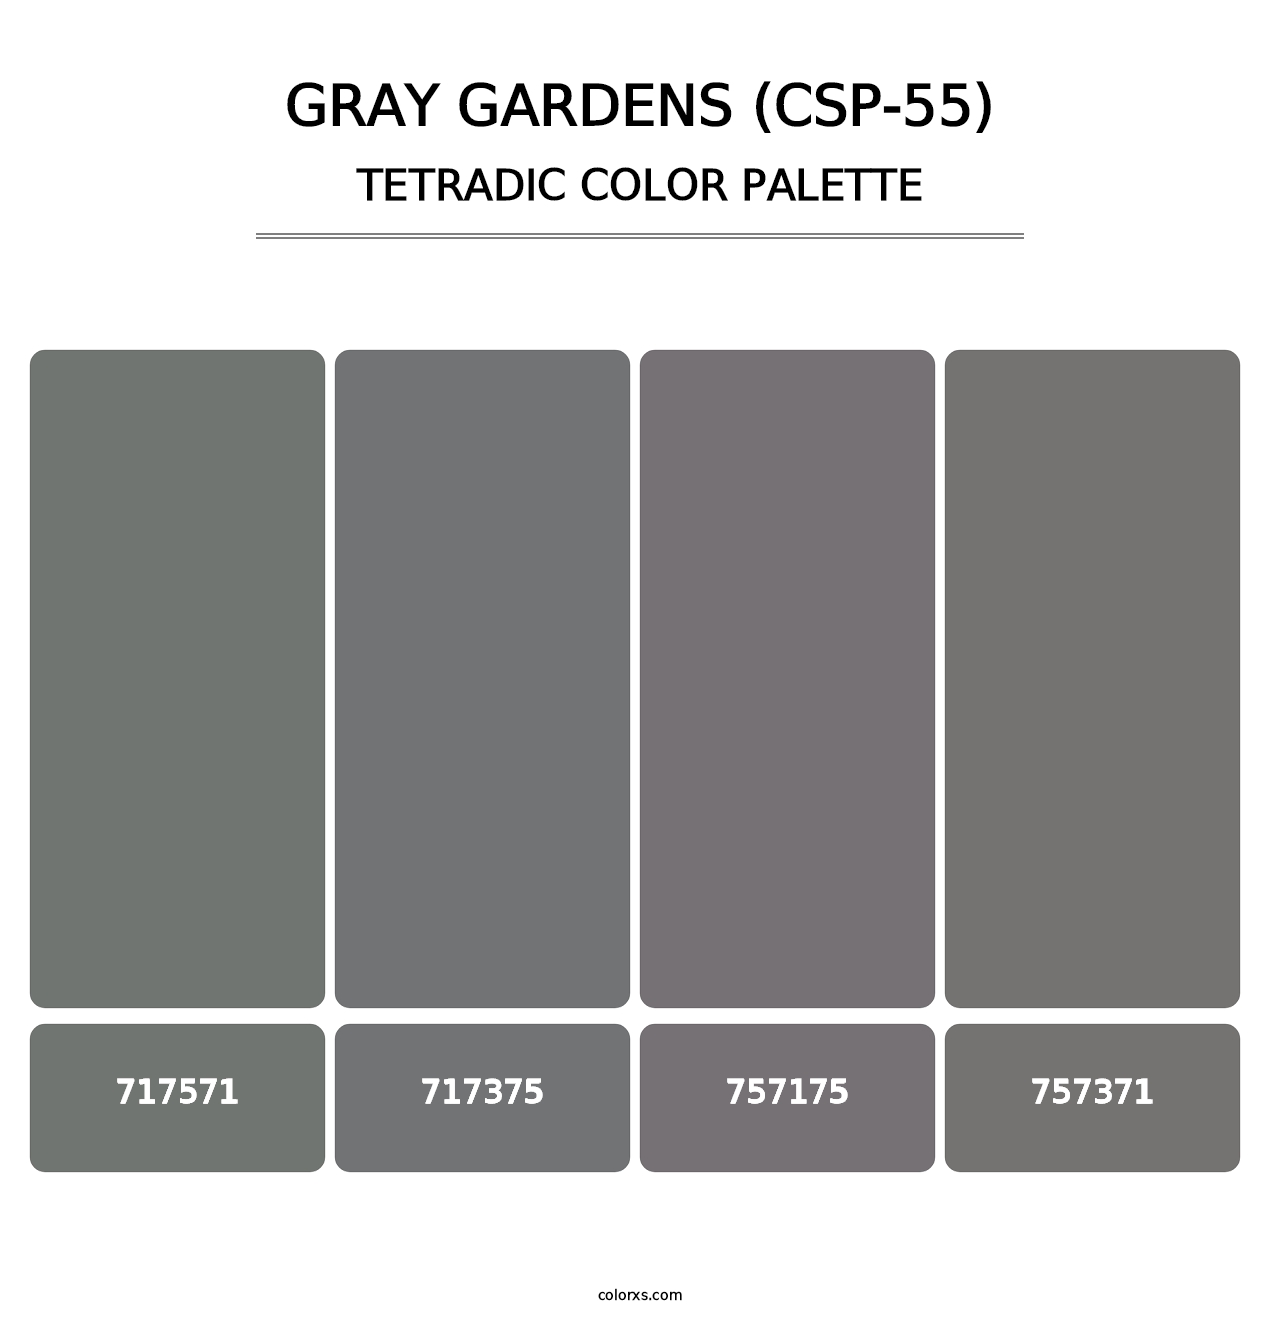 Gray Gardens (CSP-55) - Tetradic Color Palette